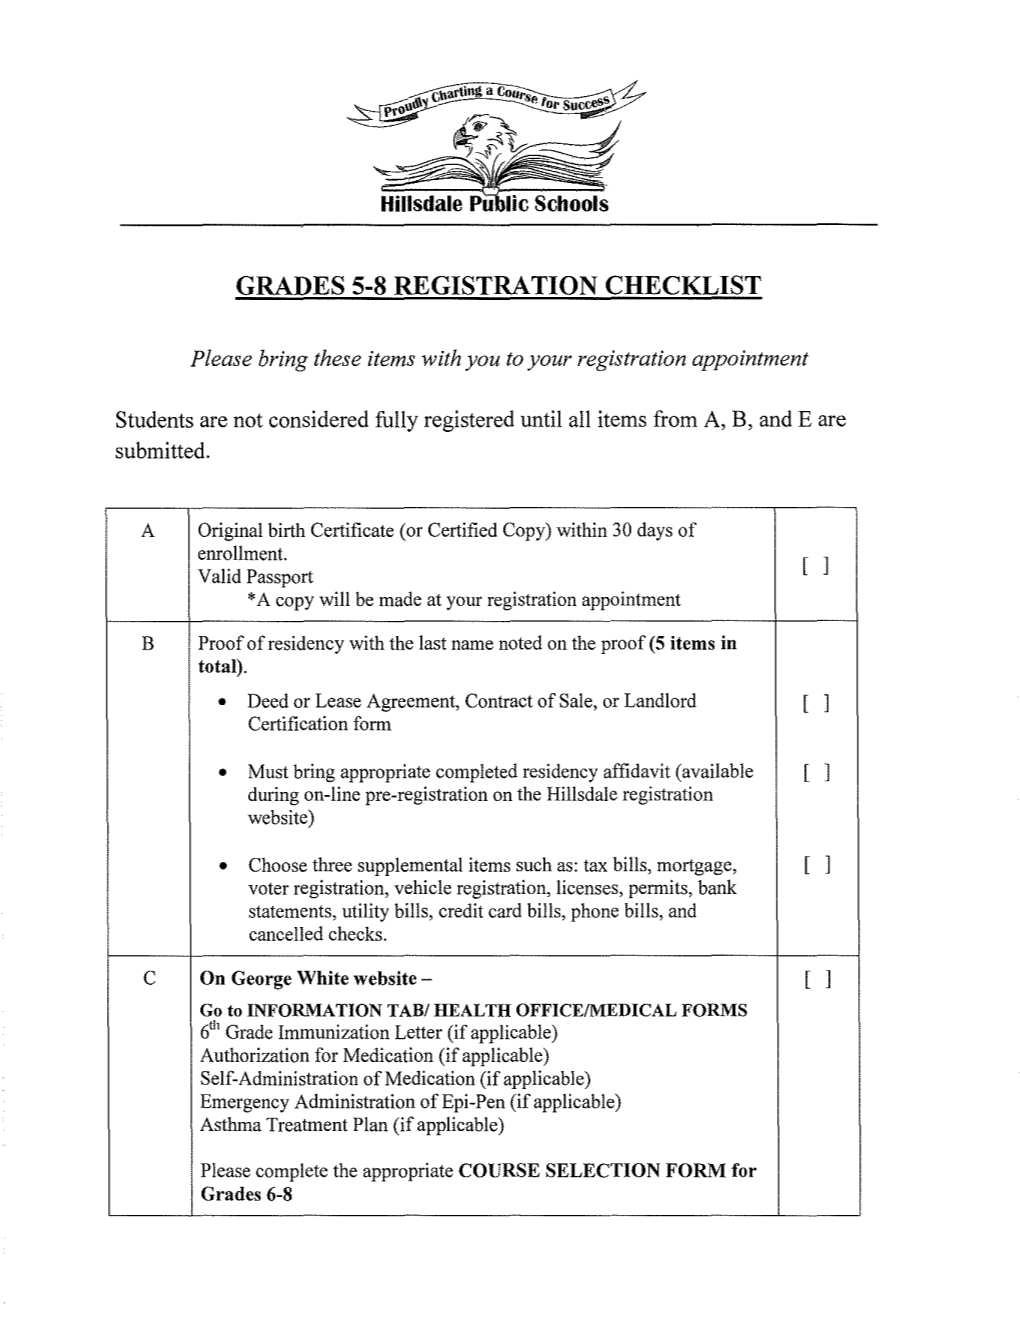 Grades 5-8 Registration Checklist